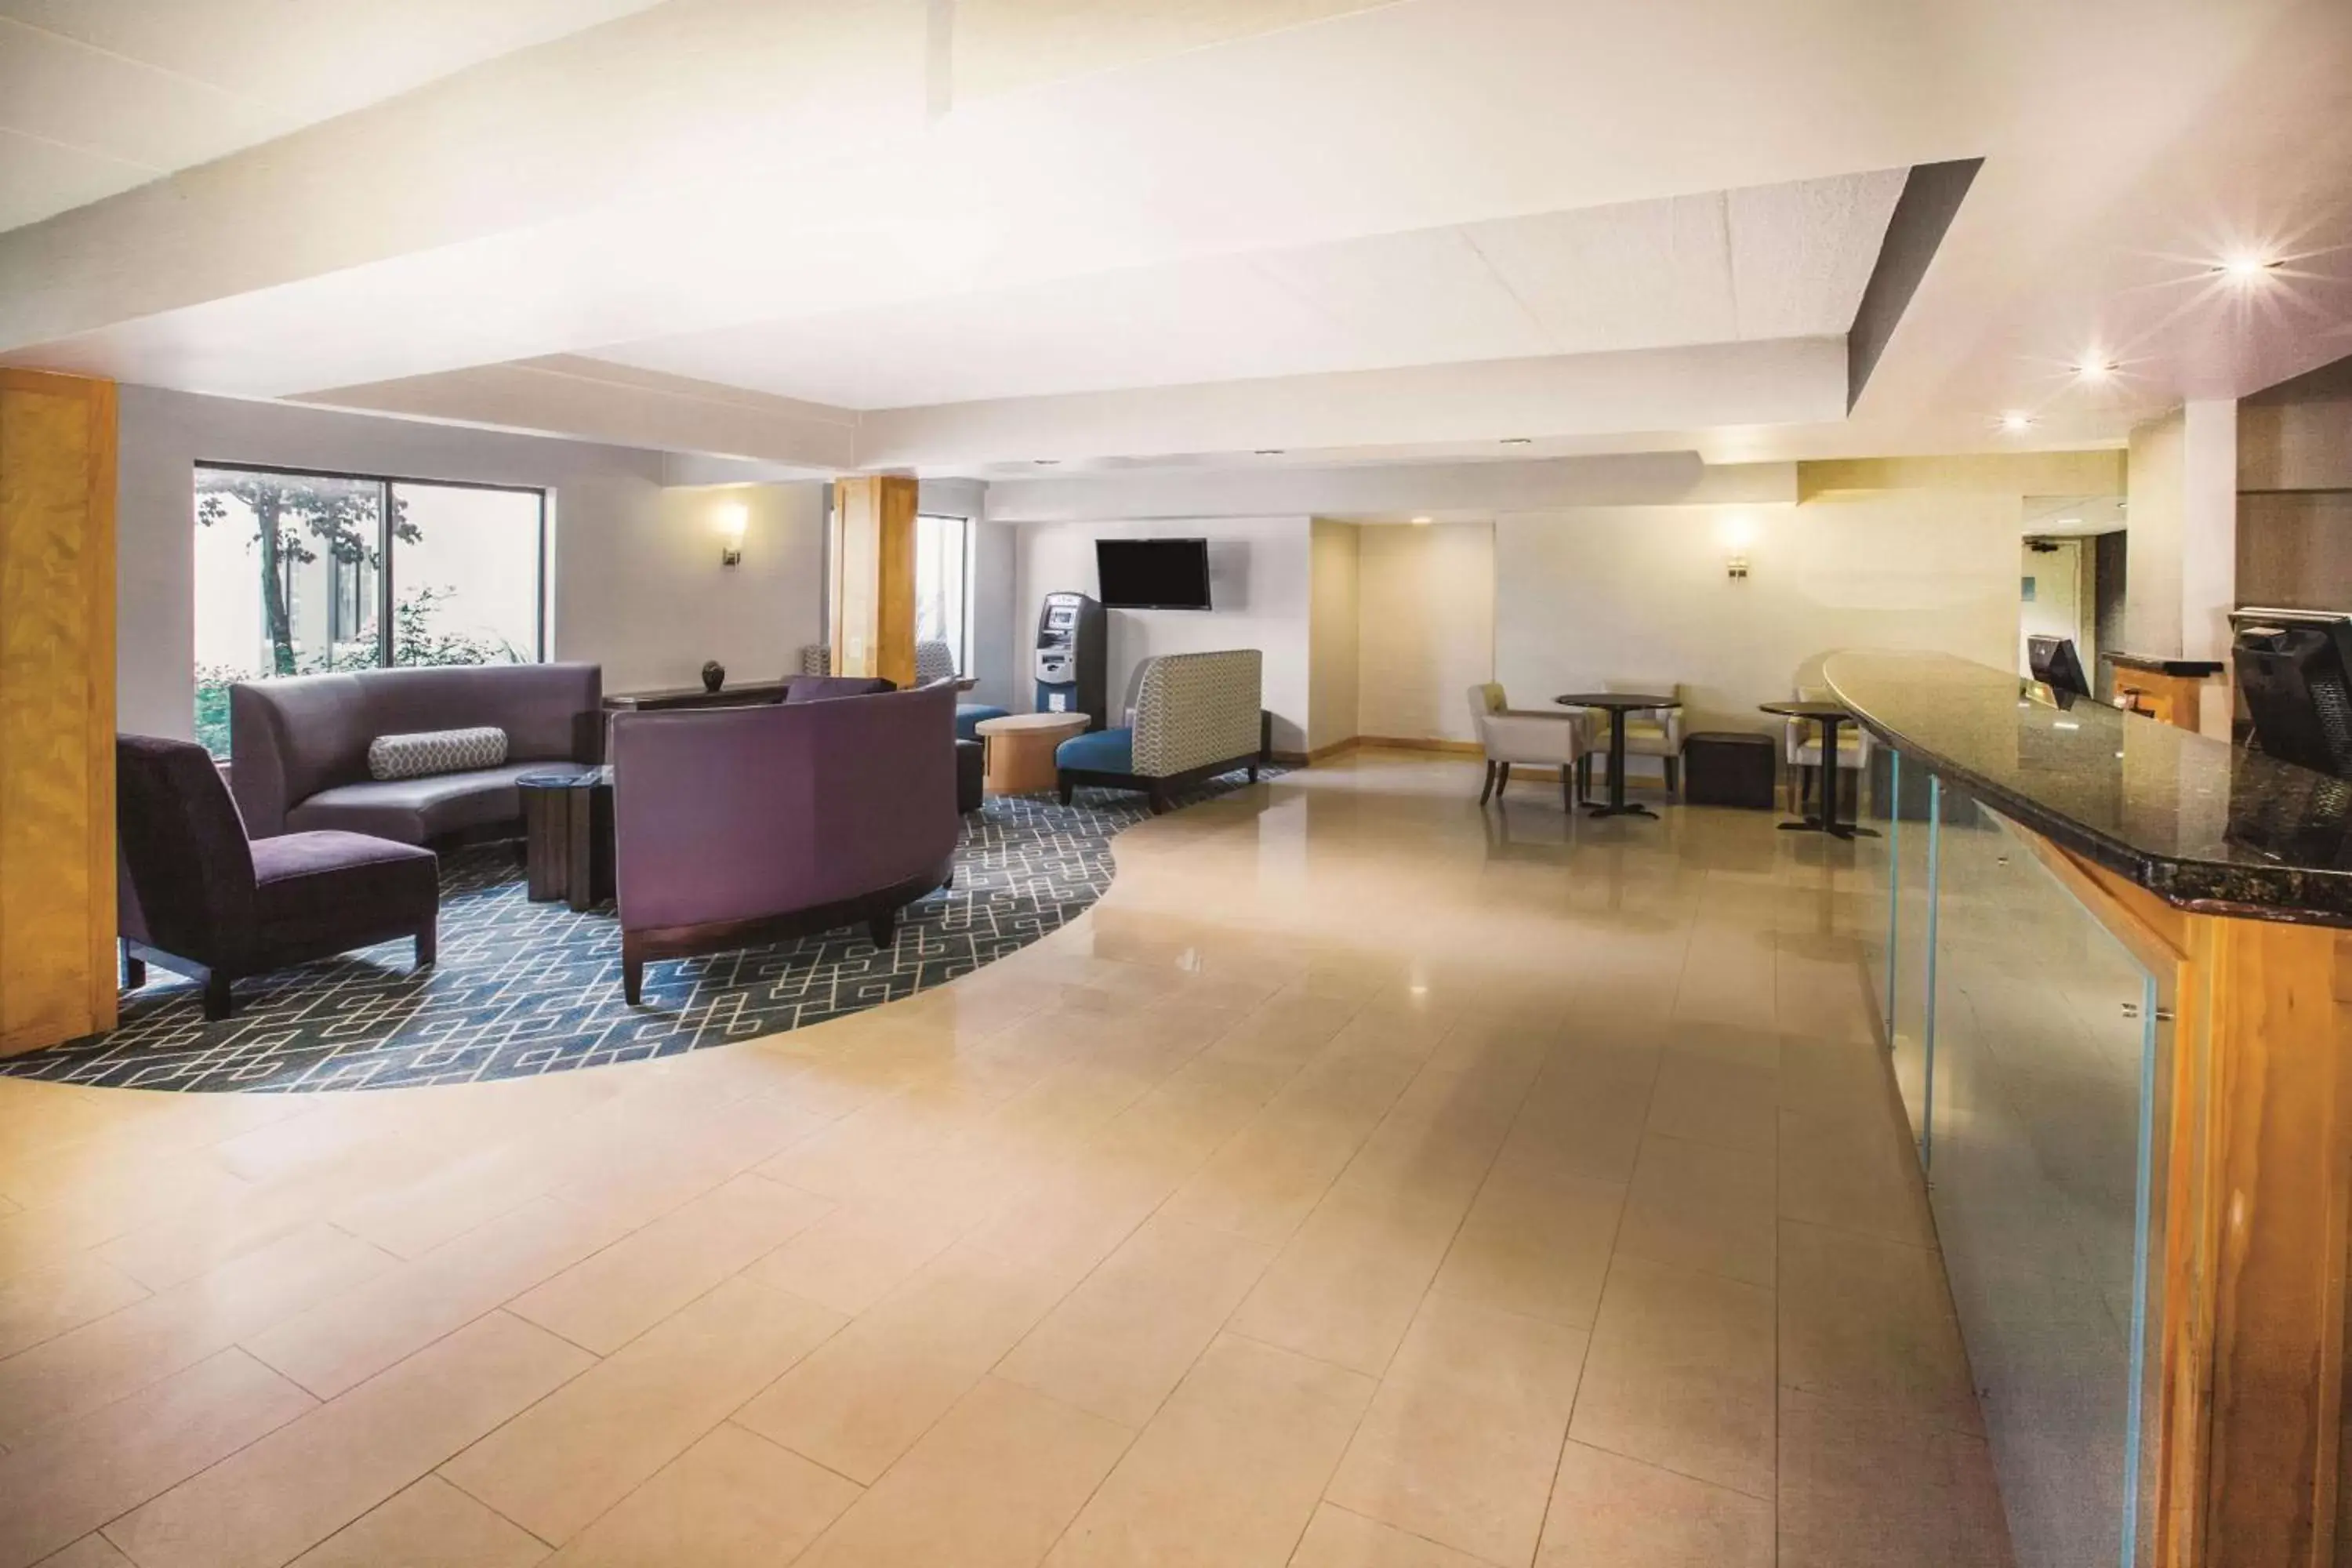 Lobby or reception, Lobby/Reception in La Quinta Inn by Wyndham Waldorf